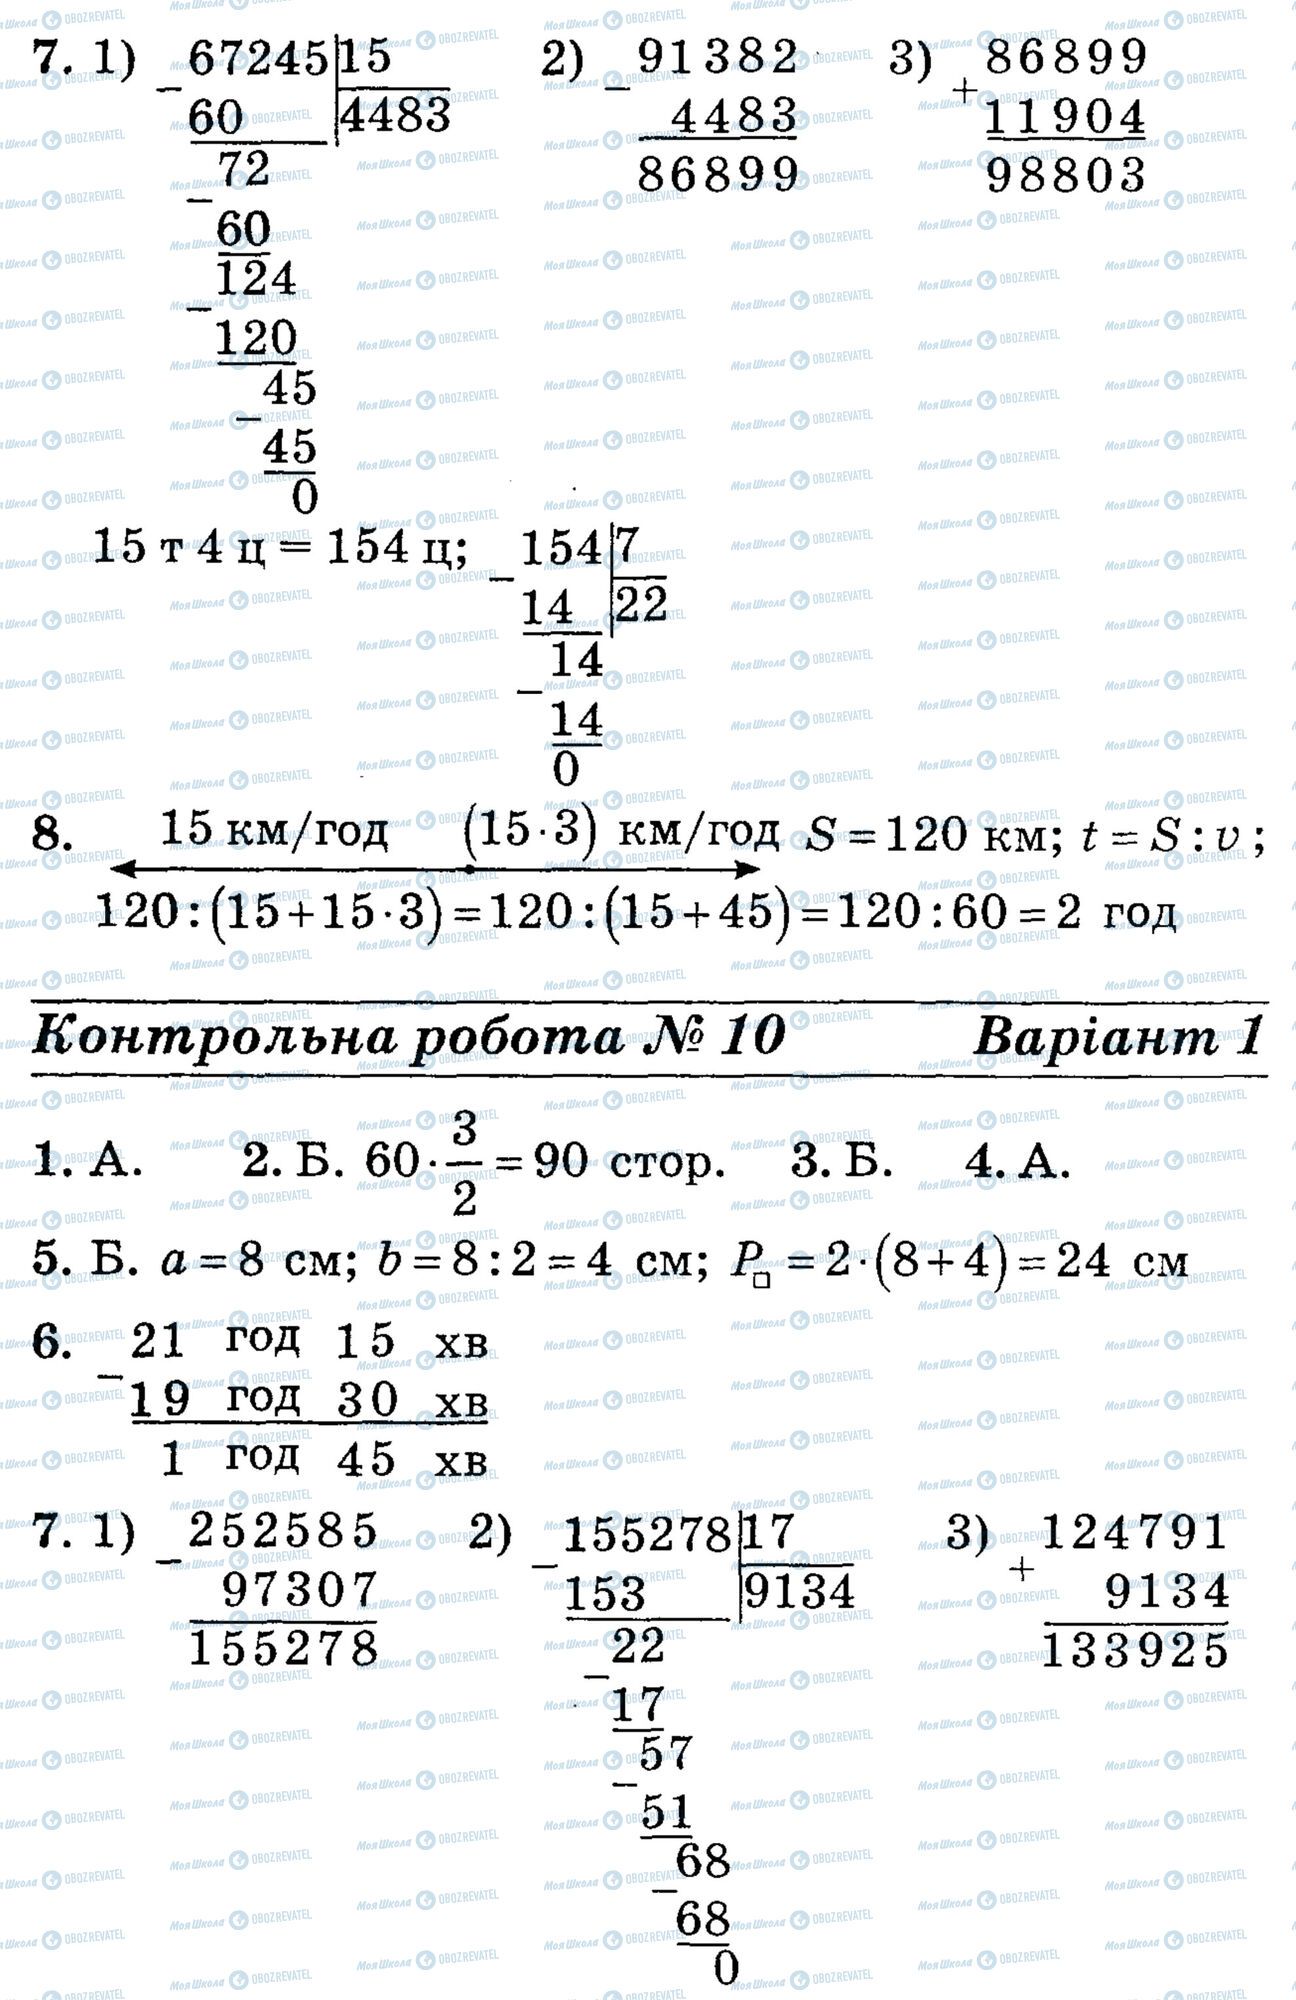 ДПА Математика 4 класс страница math-DPA-2013-4kl-K10-7